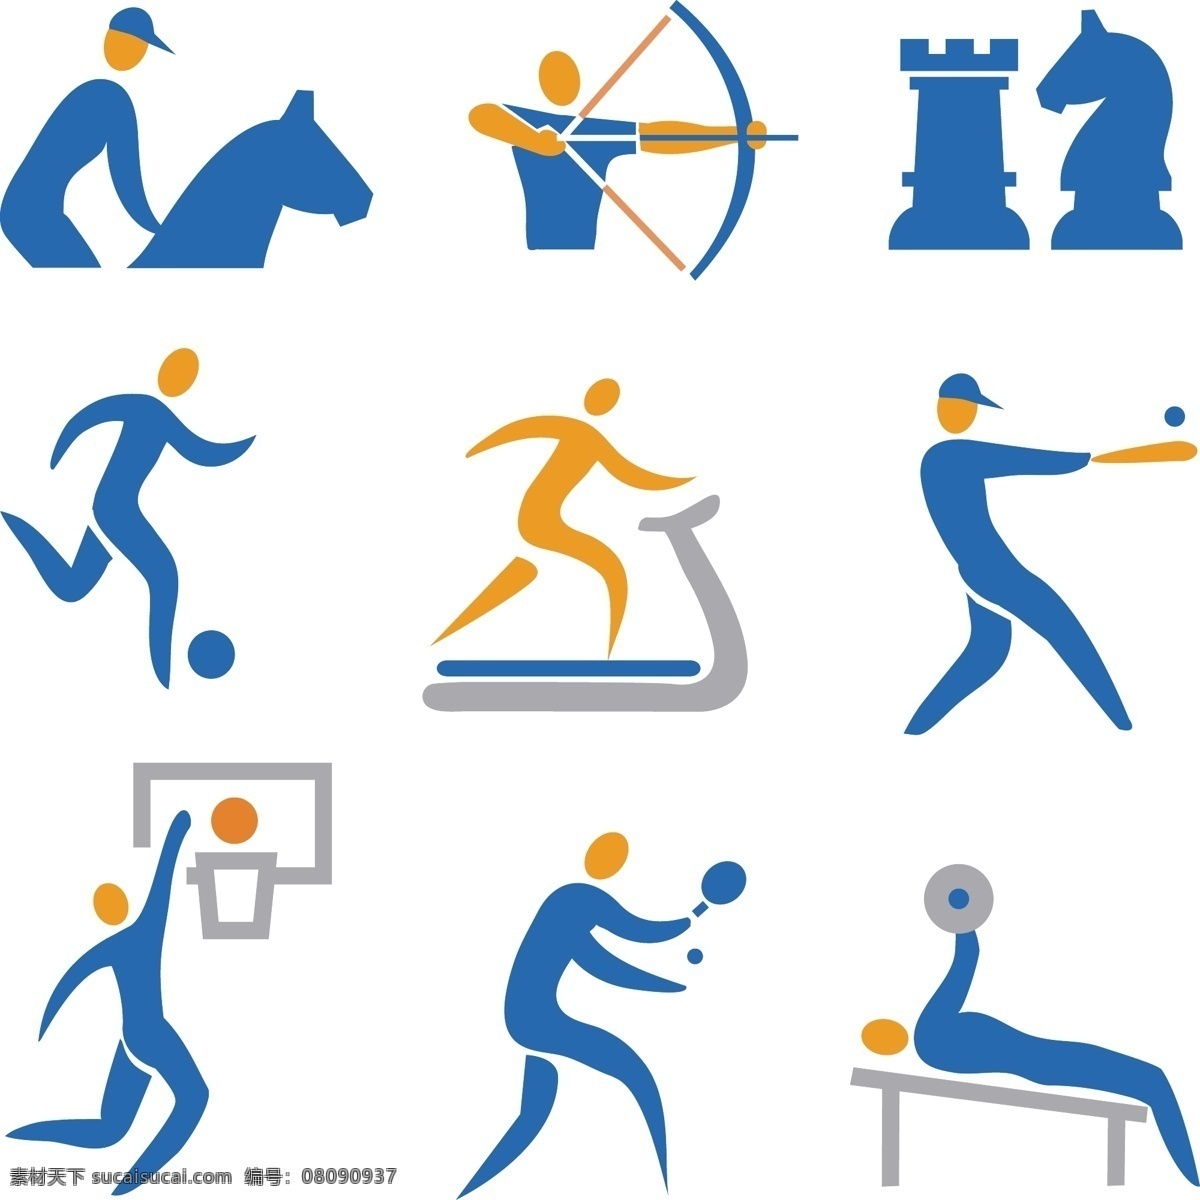 体育运动 人物 图标 抽象人物图标 创意 奥运会 亚运会 马术 射箭 国际象际 足球 煅炼 篮球 乒乓球 举重 矢量 标志 标签 logo 小图标 标识标志图标